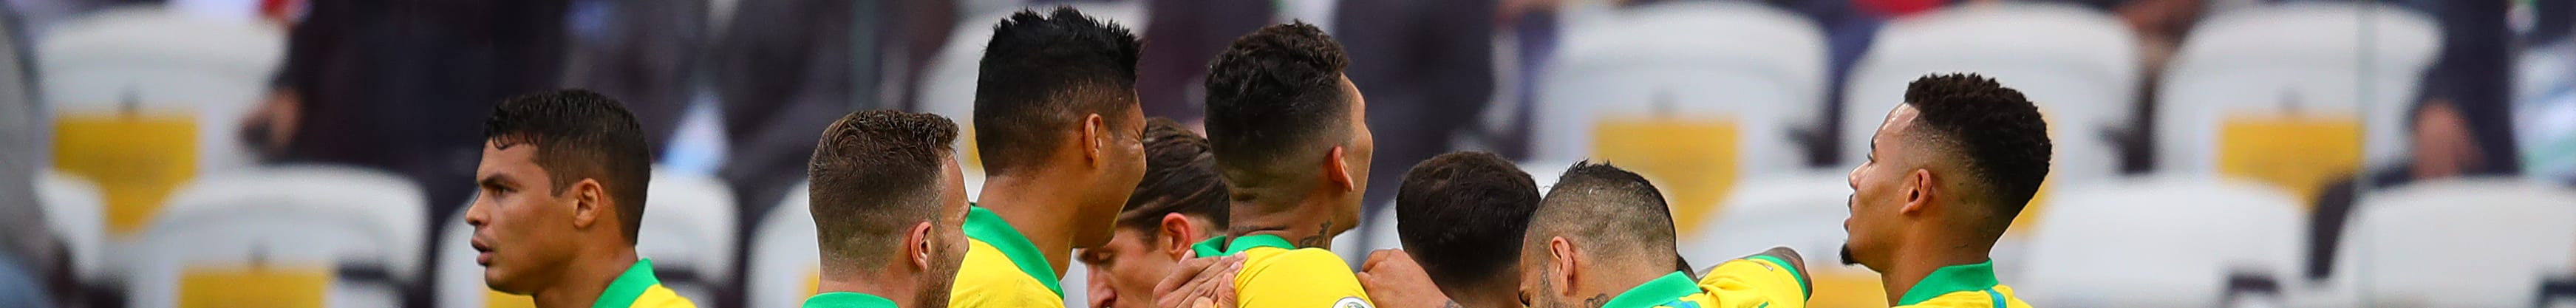 Περού - Βραζιλία: Τα φώτα στον τελικό του Copa America!